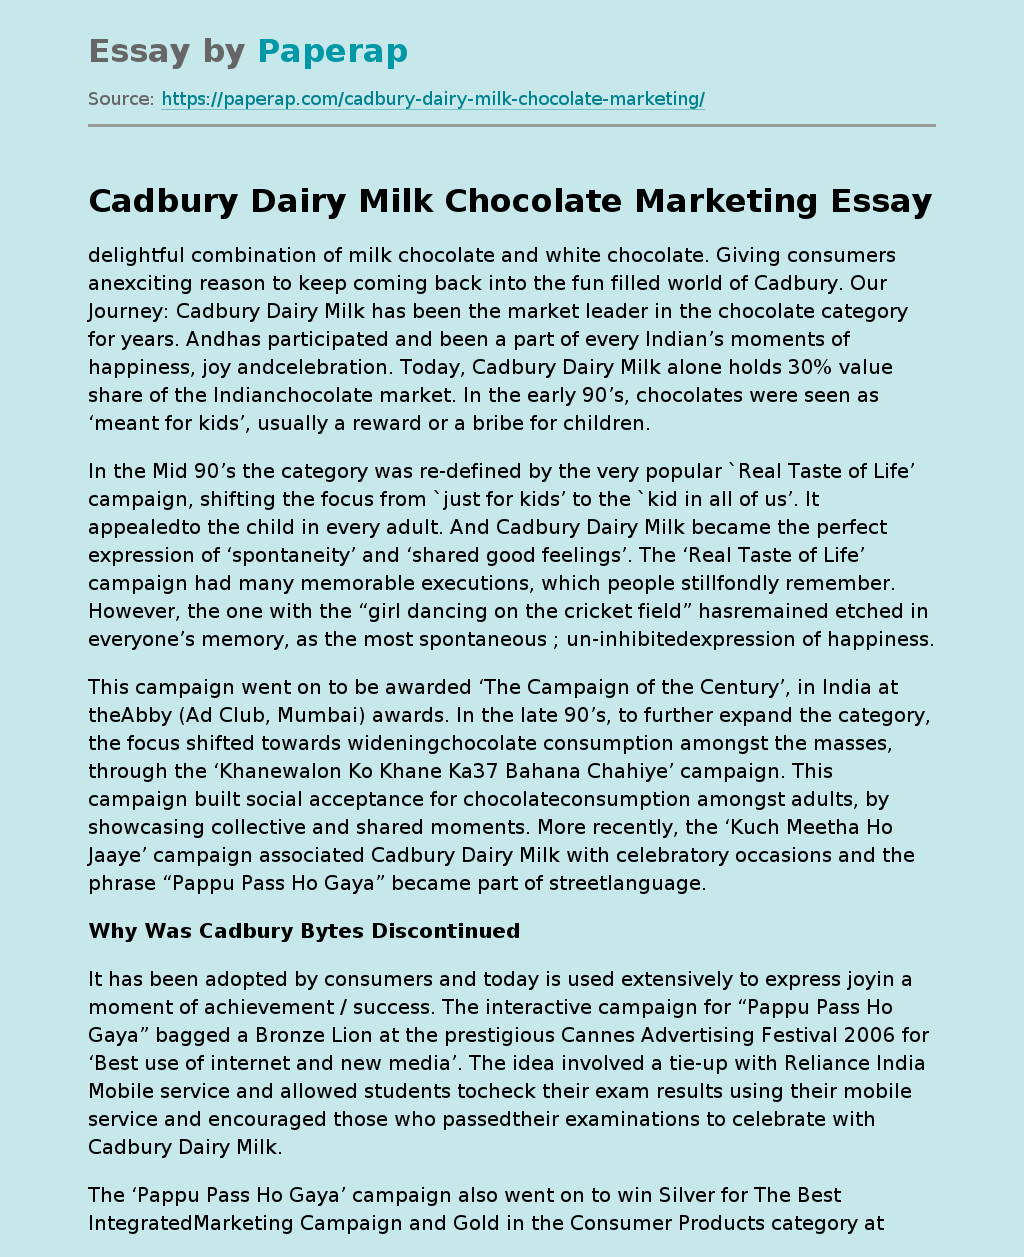 Cadbury Dairy Milk Chocolate Marketing